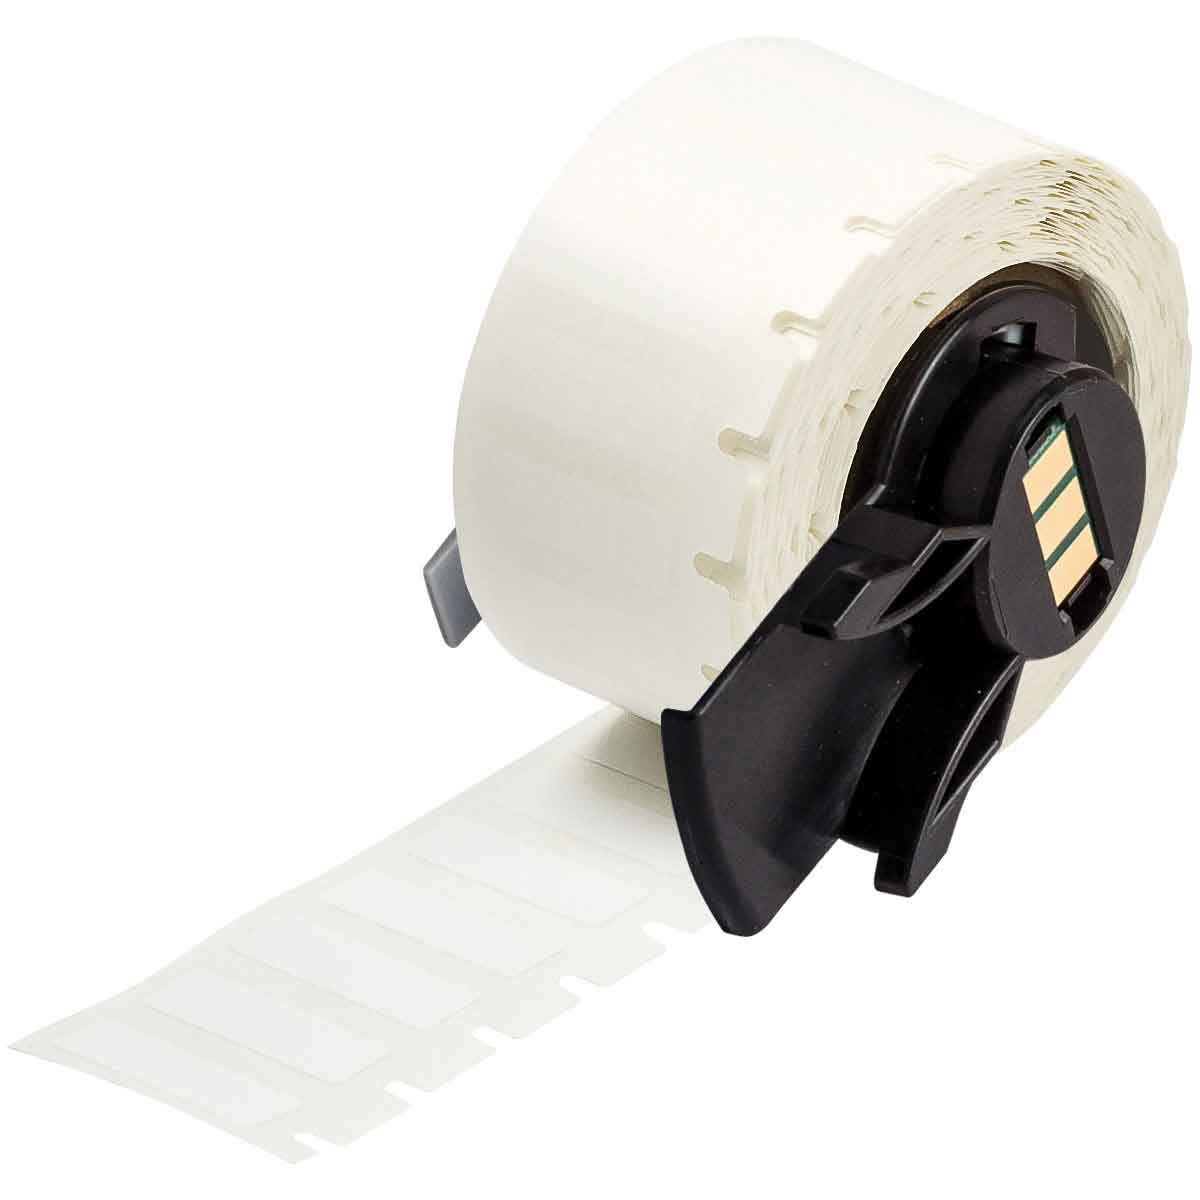 Étiquettes en tissu vinyle repositionnables pour fils et câbles pour étiqueteuses BMP61, M611 et TLS2200